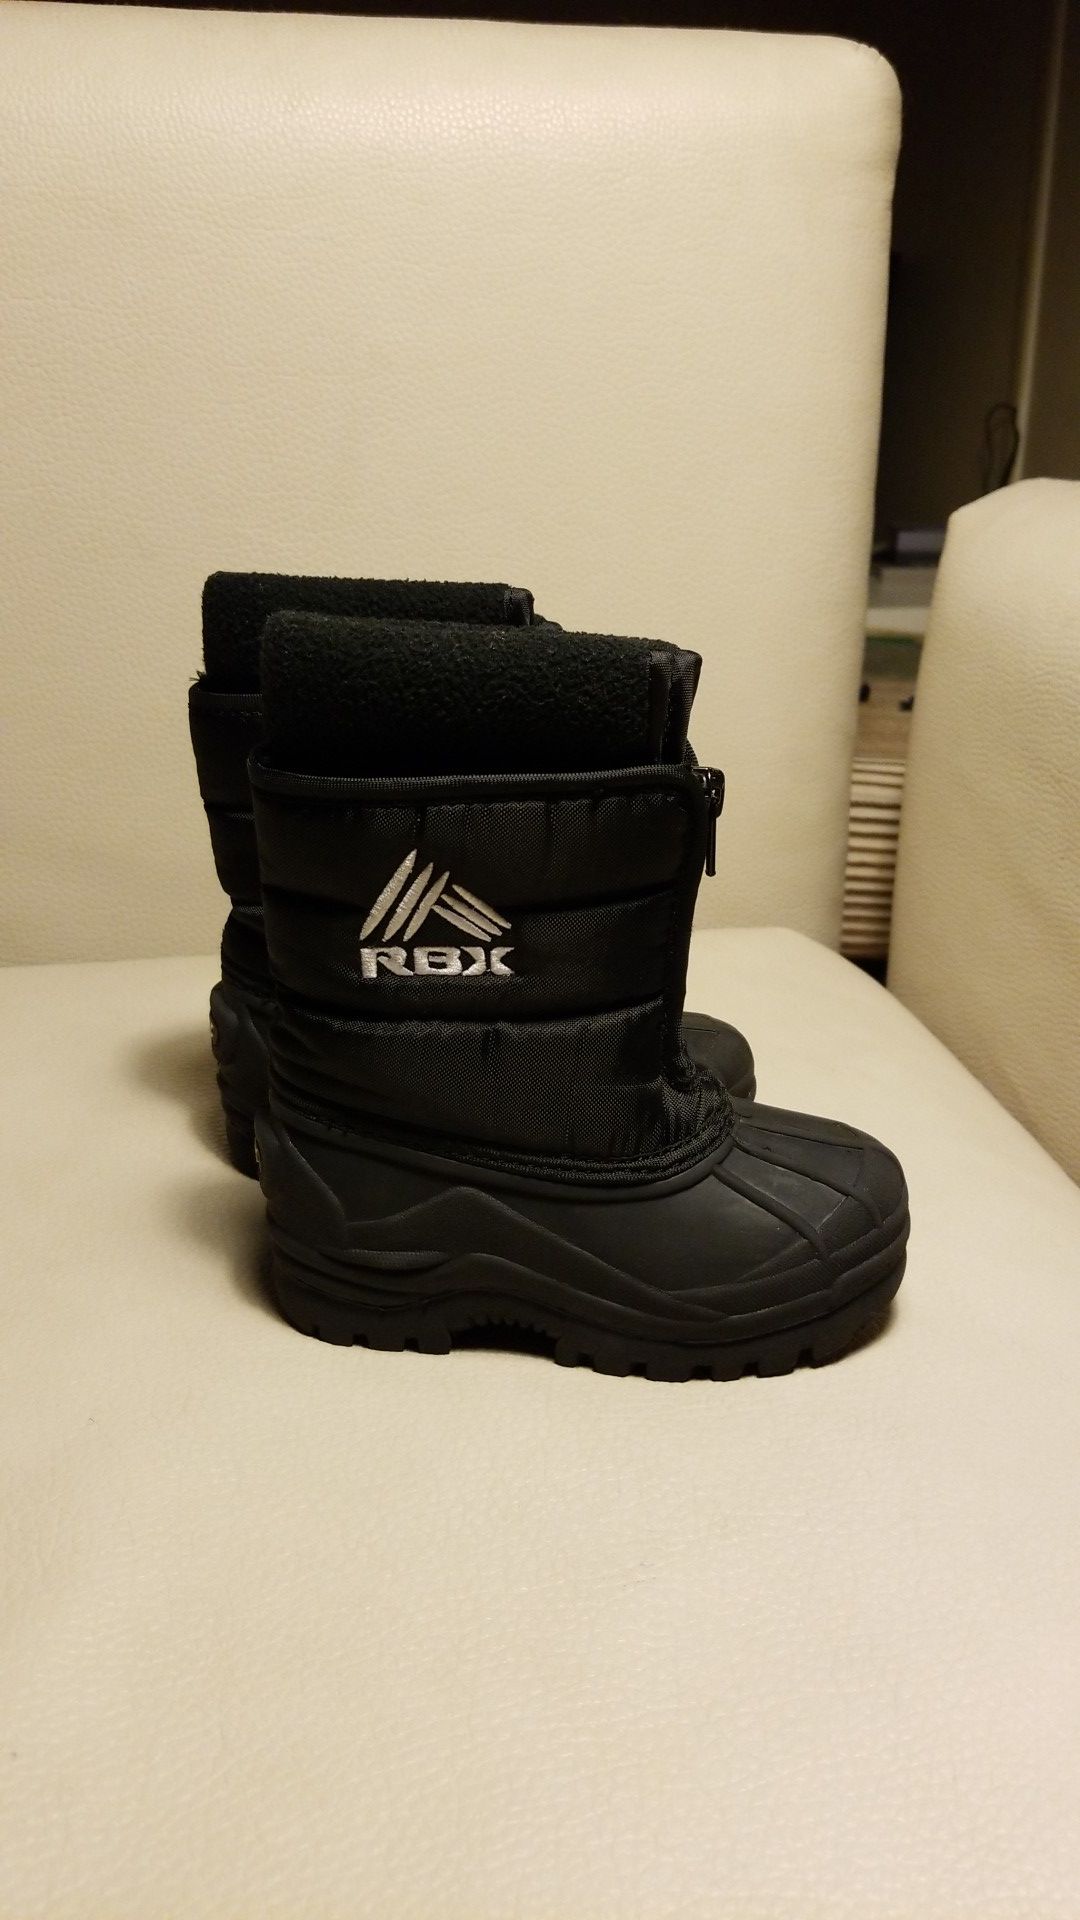 Snow boots kids size 8m black unisex